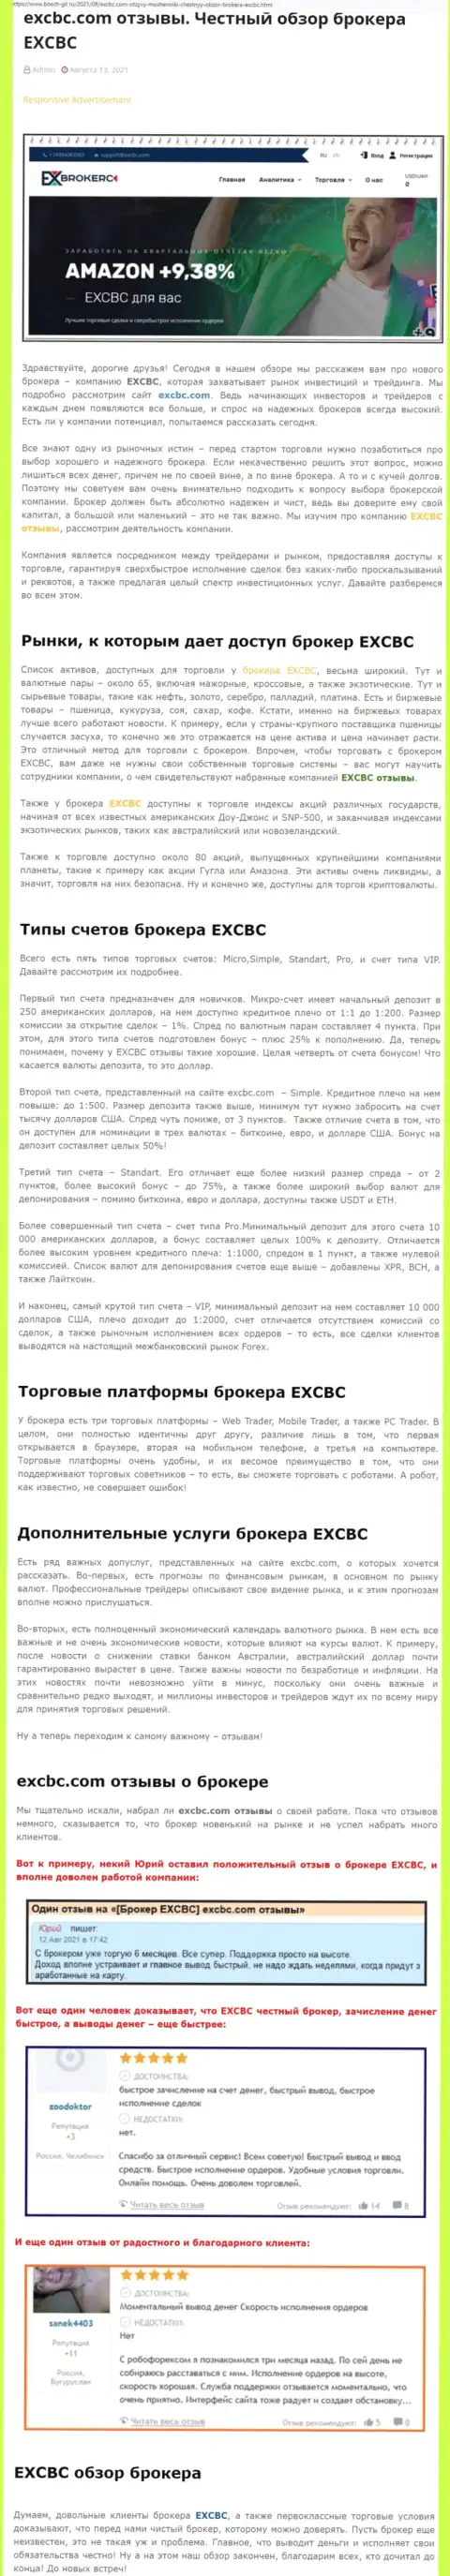 Объективный разбор деятельности ФОРЕКС организации EXCBC Сom на web-сервисе бош гил ру